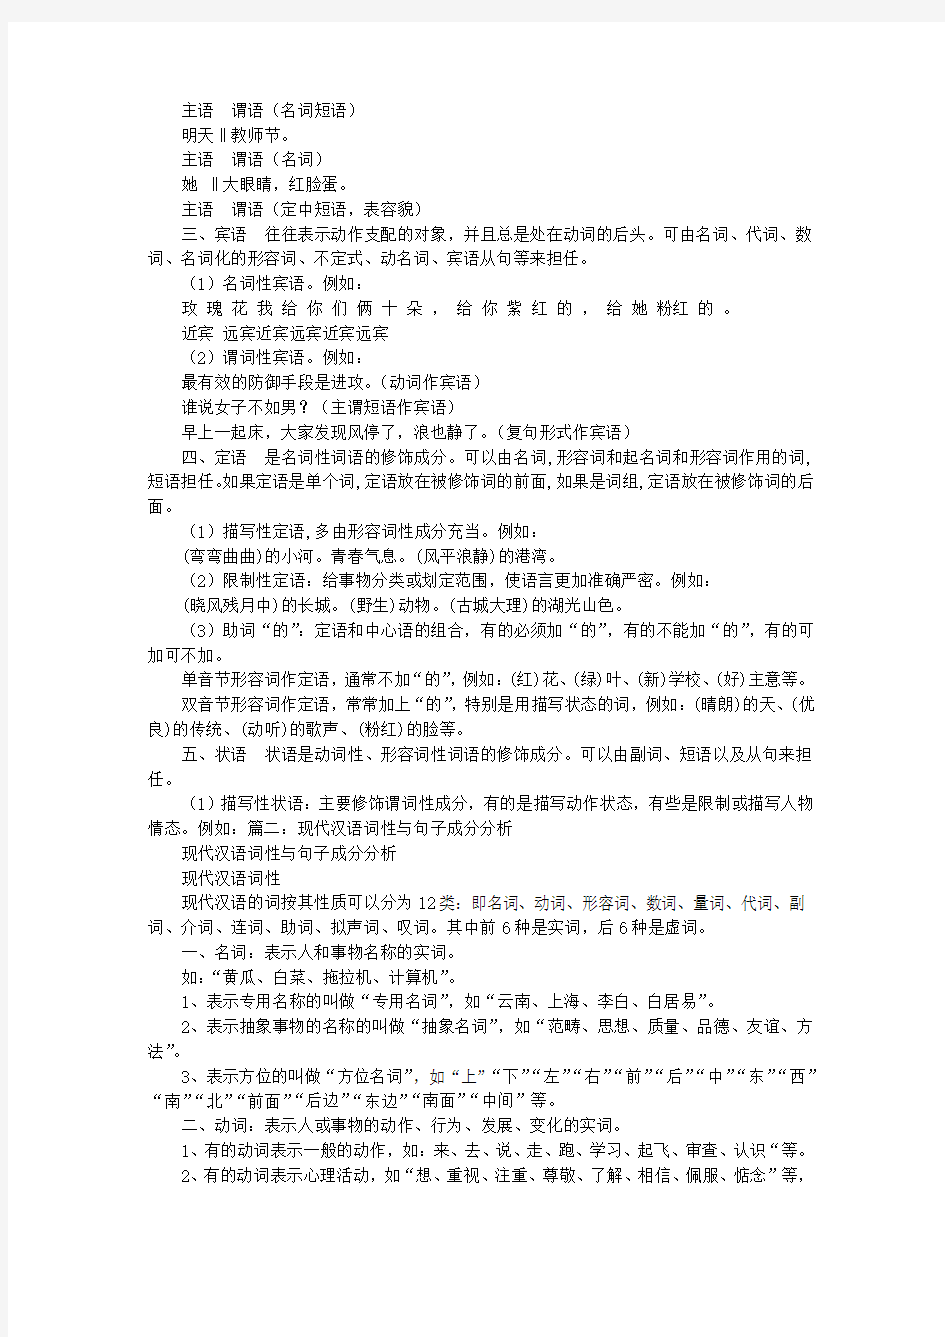 句子成分分析中文